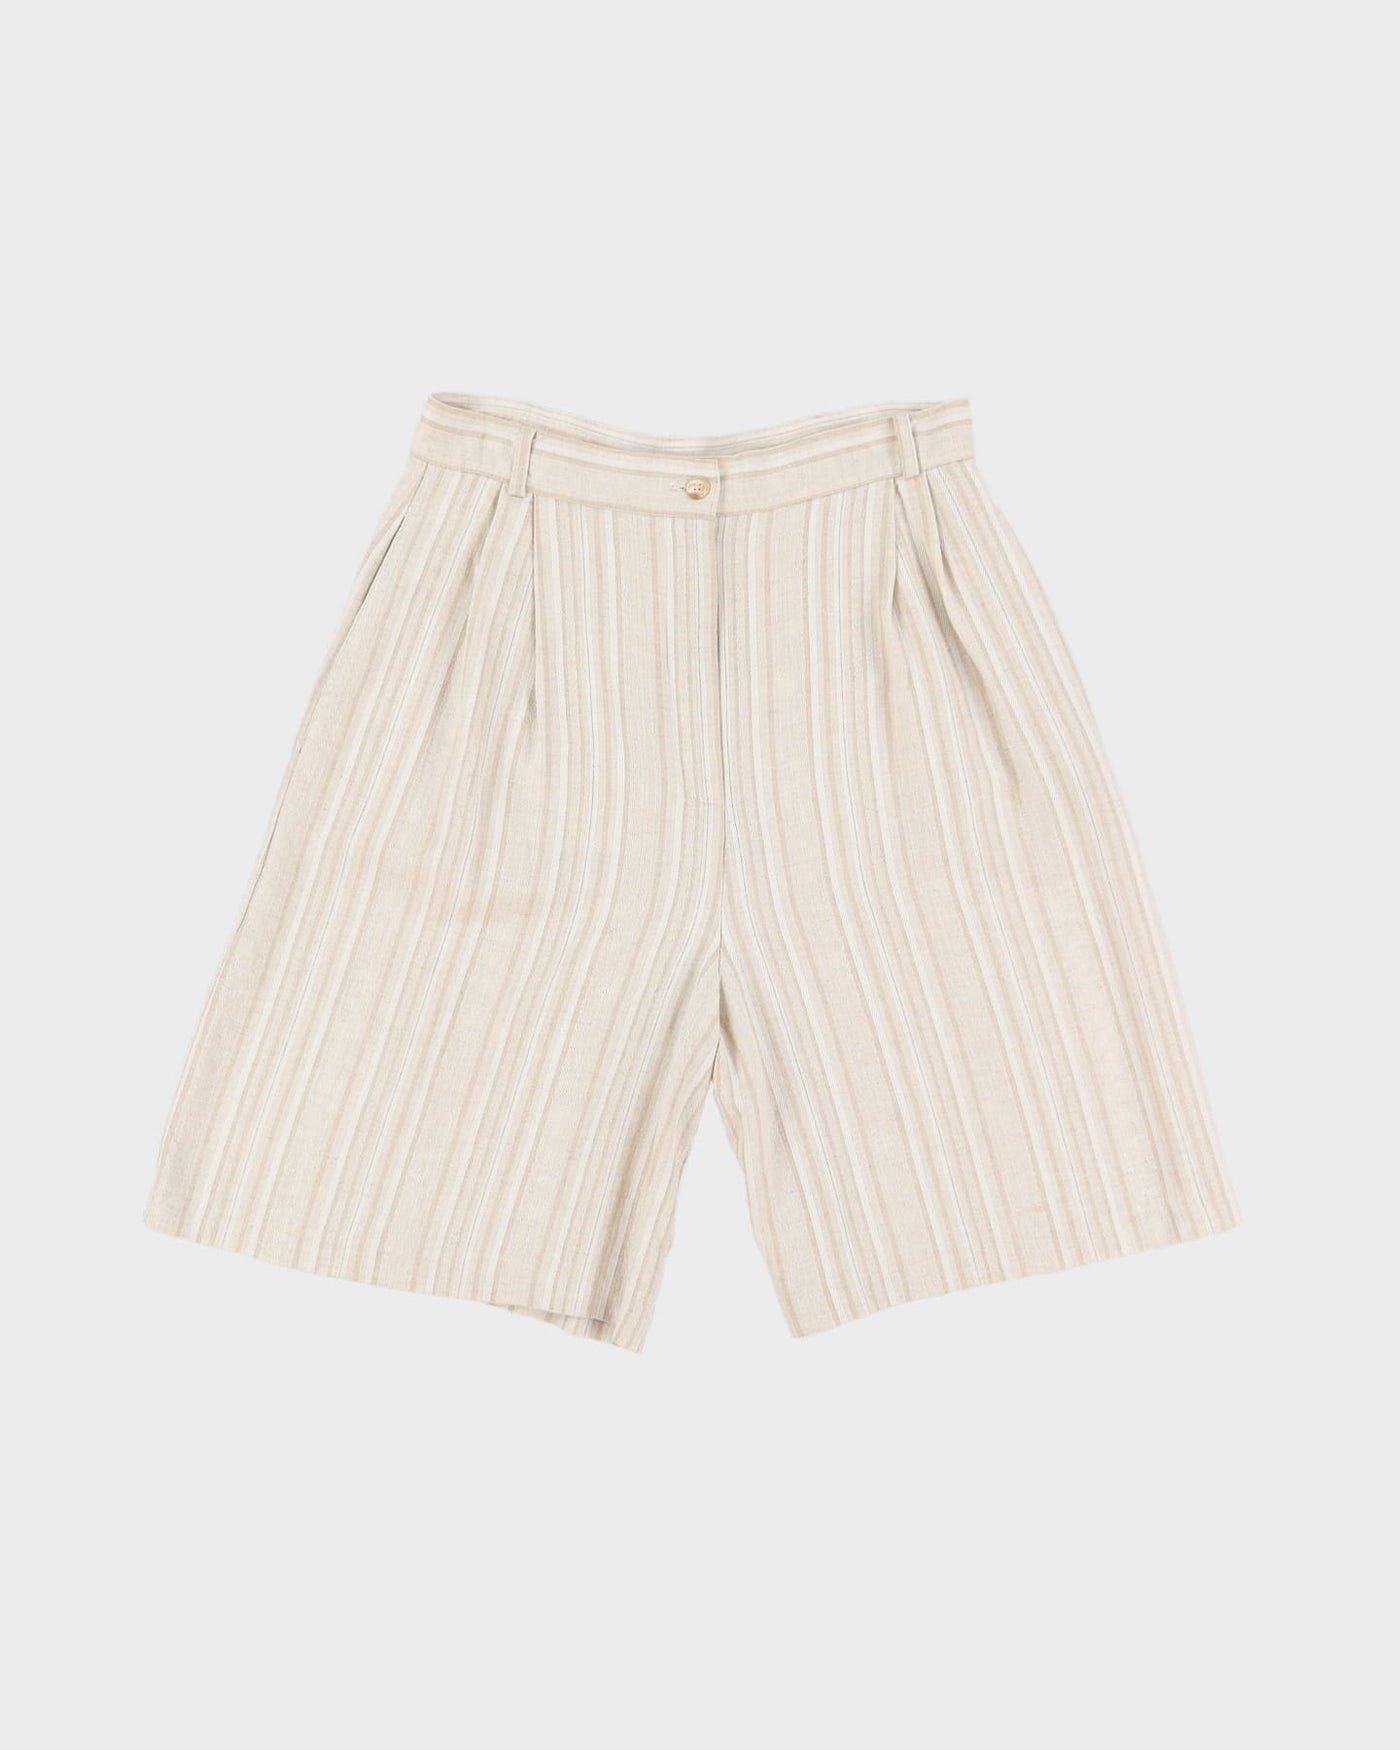 90s Beige White Striped High Waist Bermuda Shorts - W30